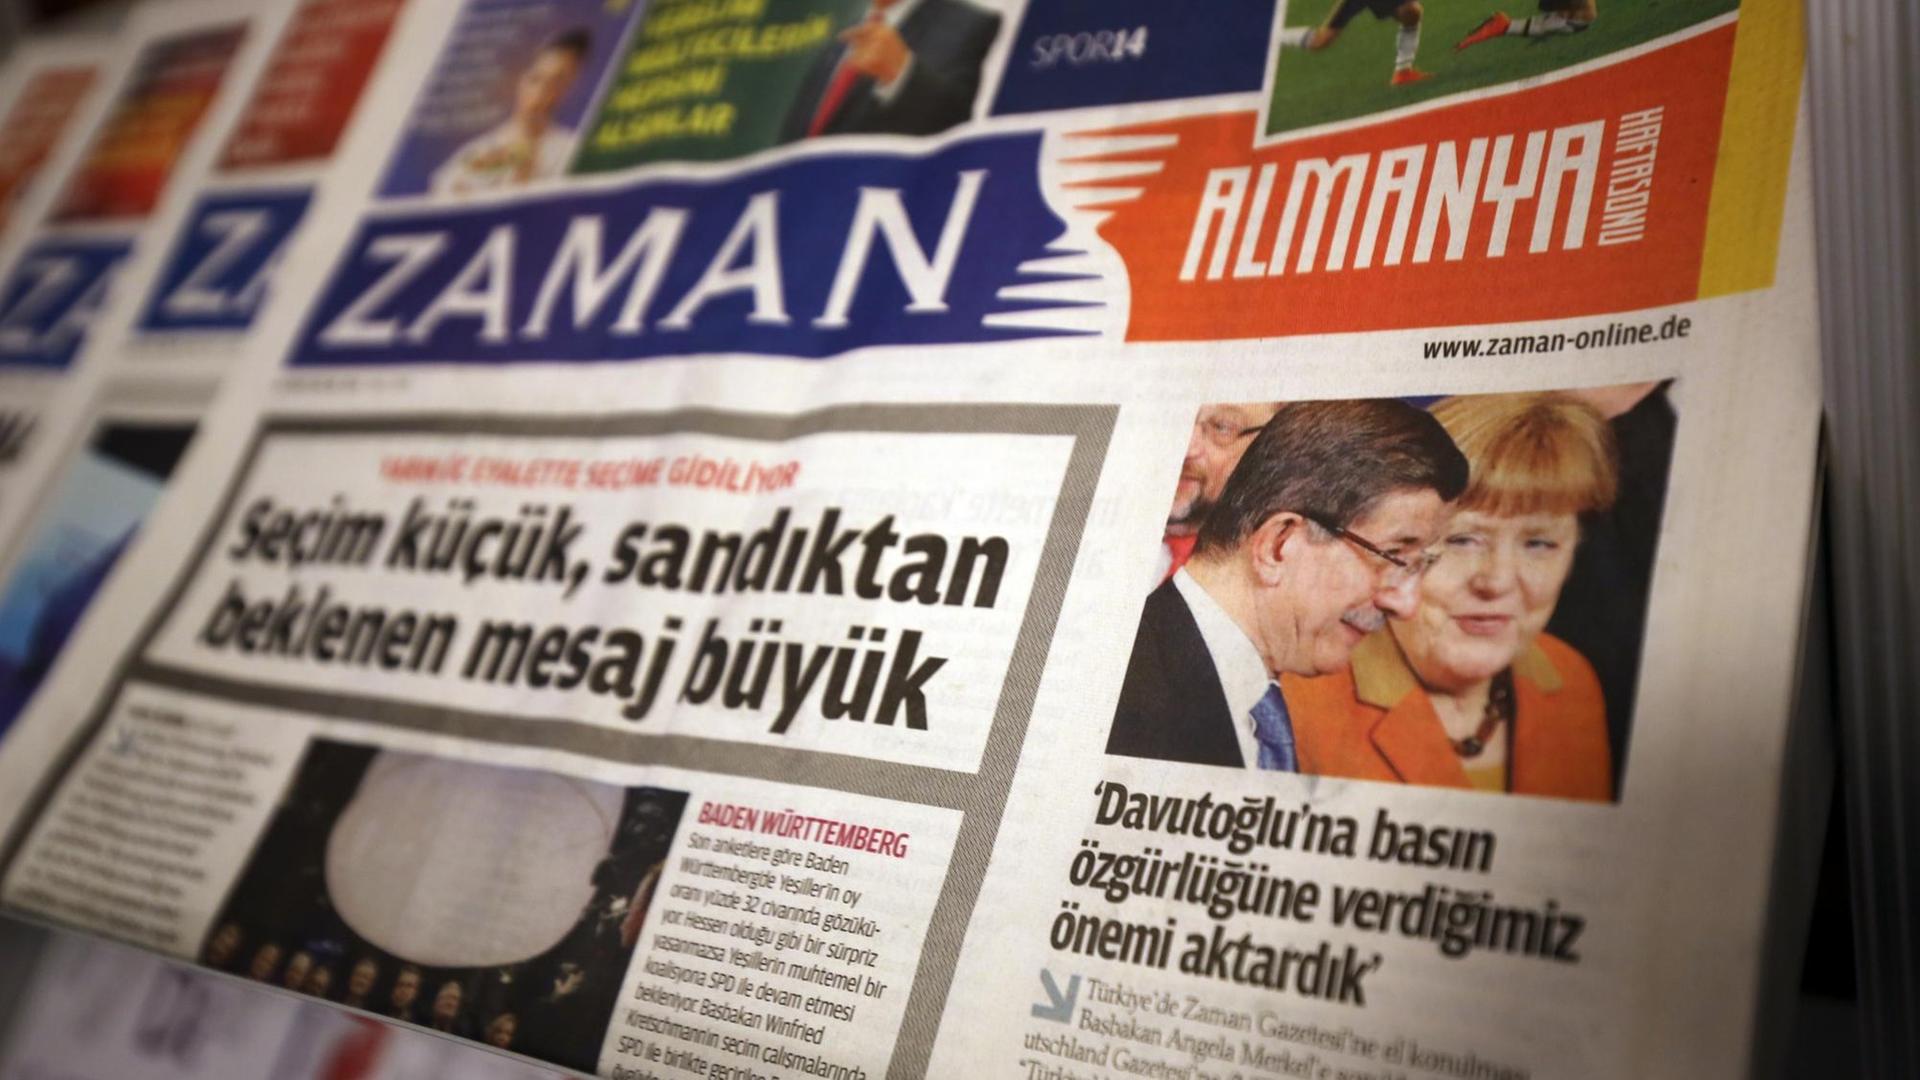 Die Titelseite einer Ausgabe der türkischen Tageszeitung Zaman